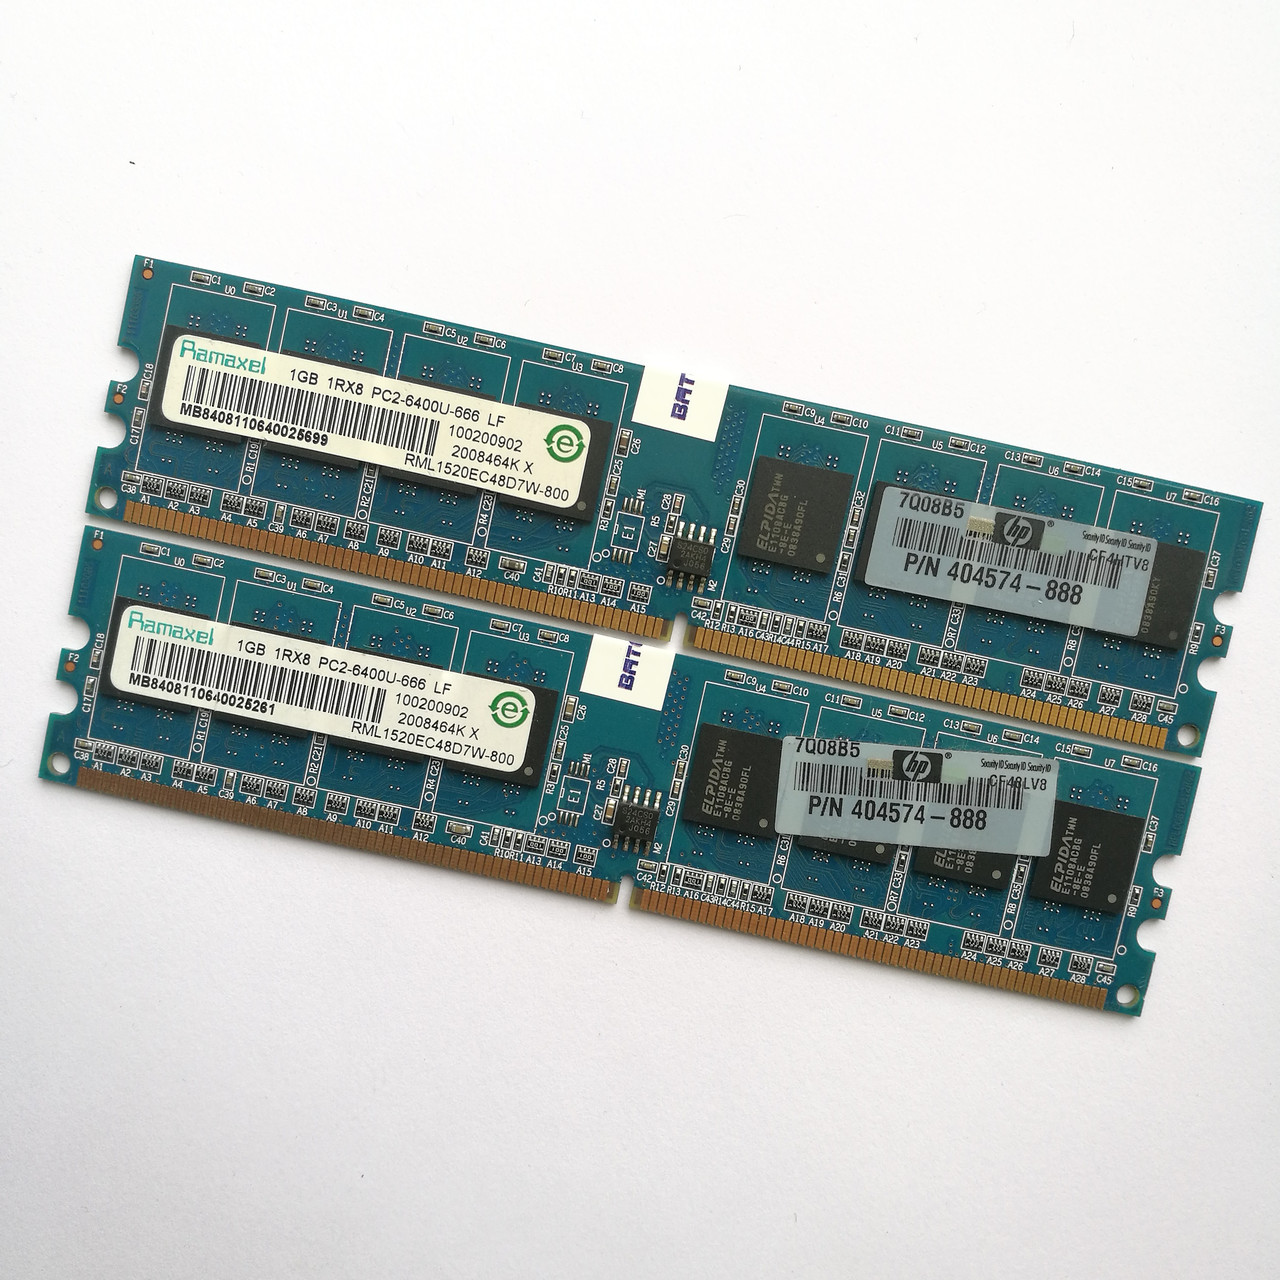 Комплект оперативной памяти Ramaxel DDR2 2Gb (1Gb+1Gb) 800MHz PC2 6400U CL6 (RML1520EC48D7W-800) Б/У